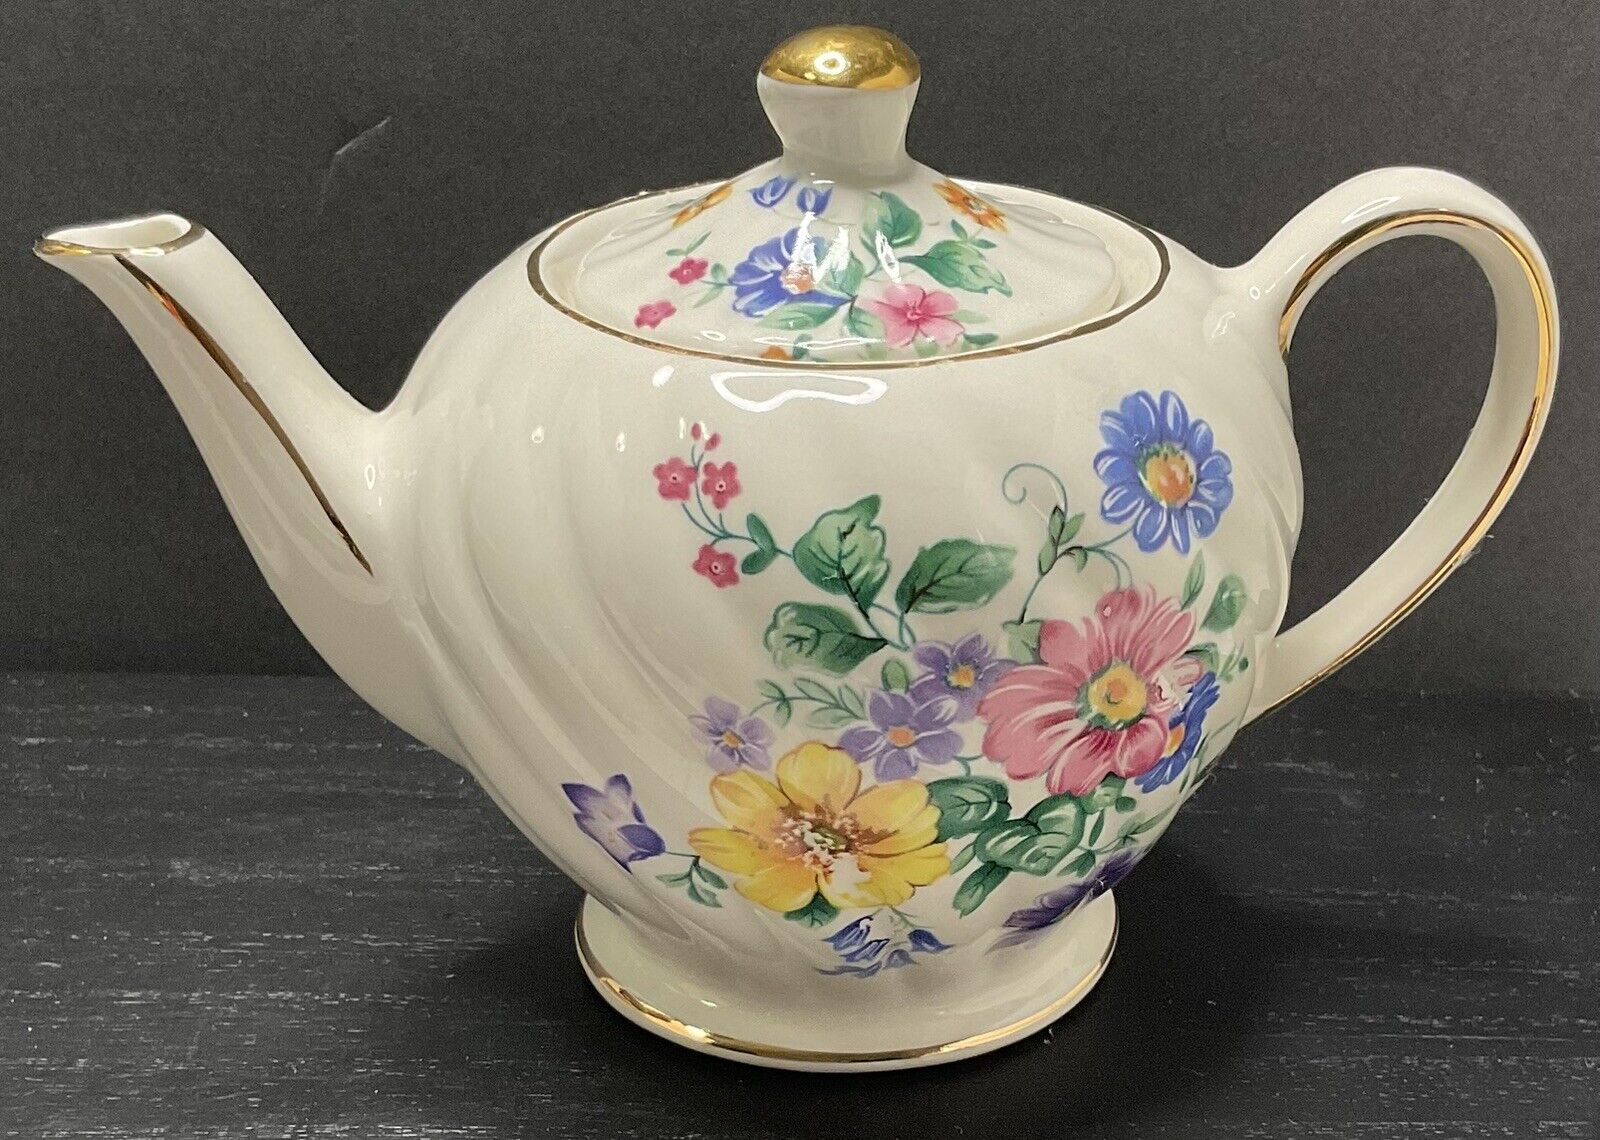 Vtg Windsor Teapot Floral Design wIth Swirl & Gold Trim made in Sadler England